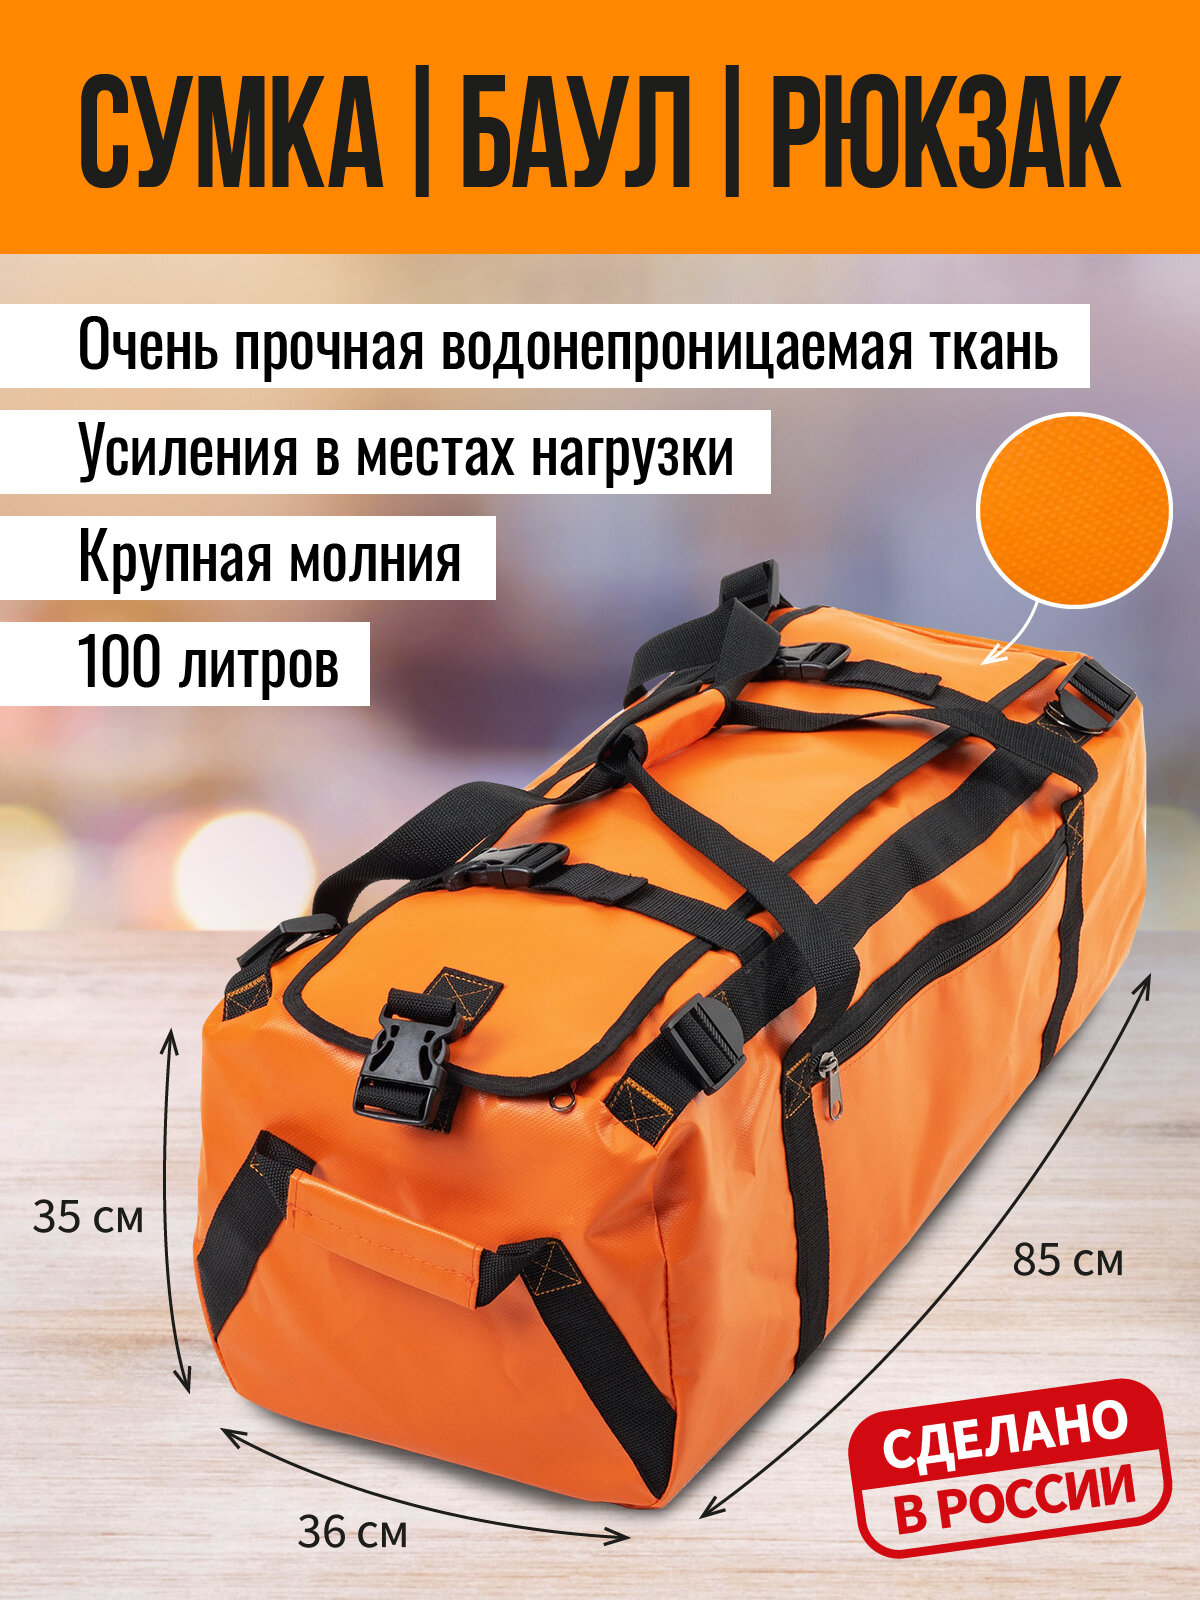 "Гермосумки ООО"АРТ БЭГ" - это сумки для защиты ваших вещей от воды и грязи! Сумка-рюкзак 100л, оранжевый, 35*36*85см